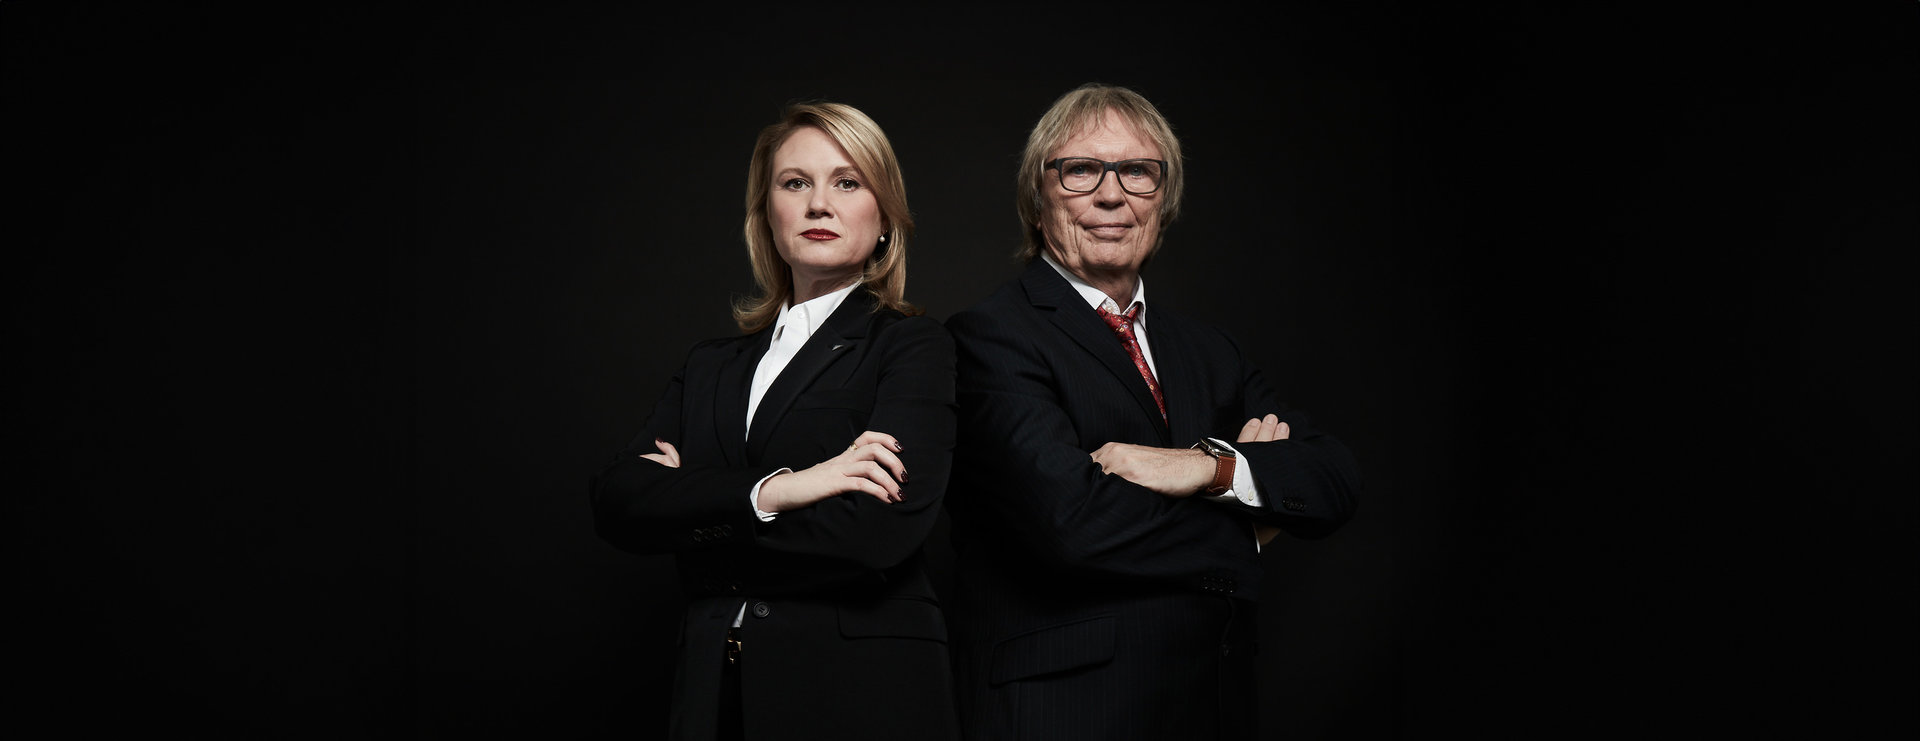 Denise Gerull und Prof. Dr. Ulrich Sommer - Strafanwälte aus Köln